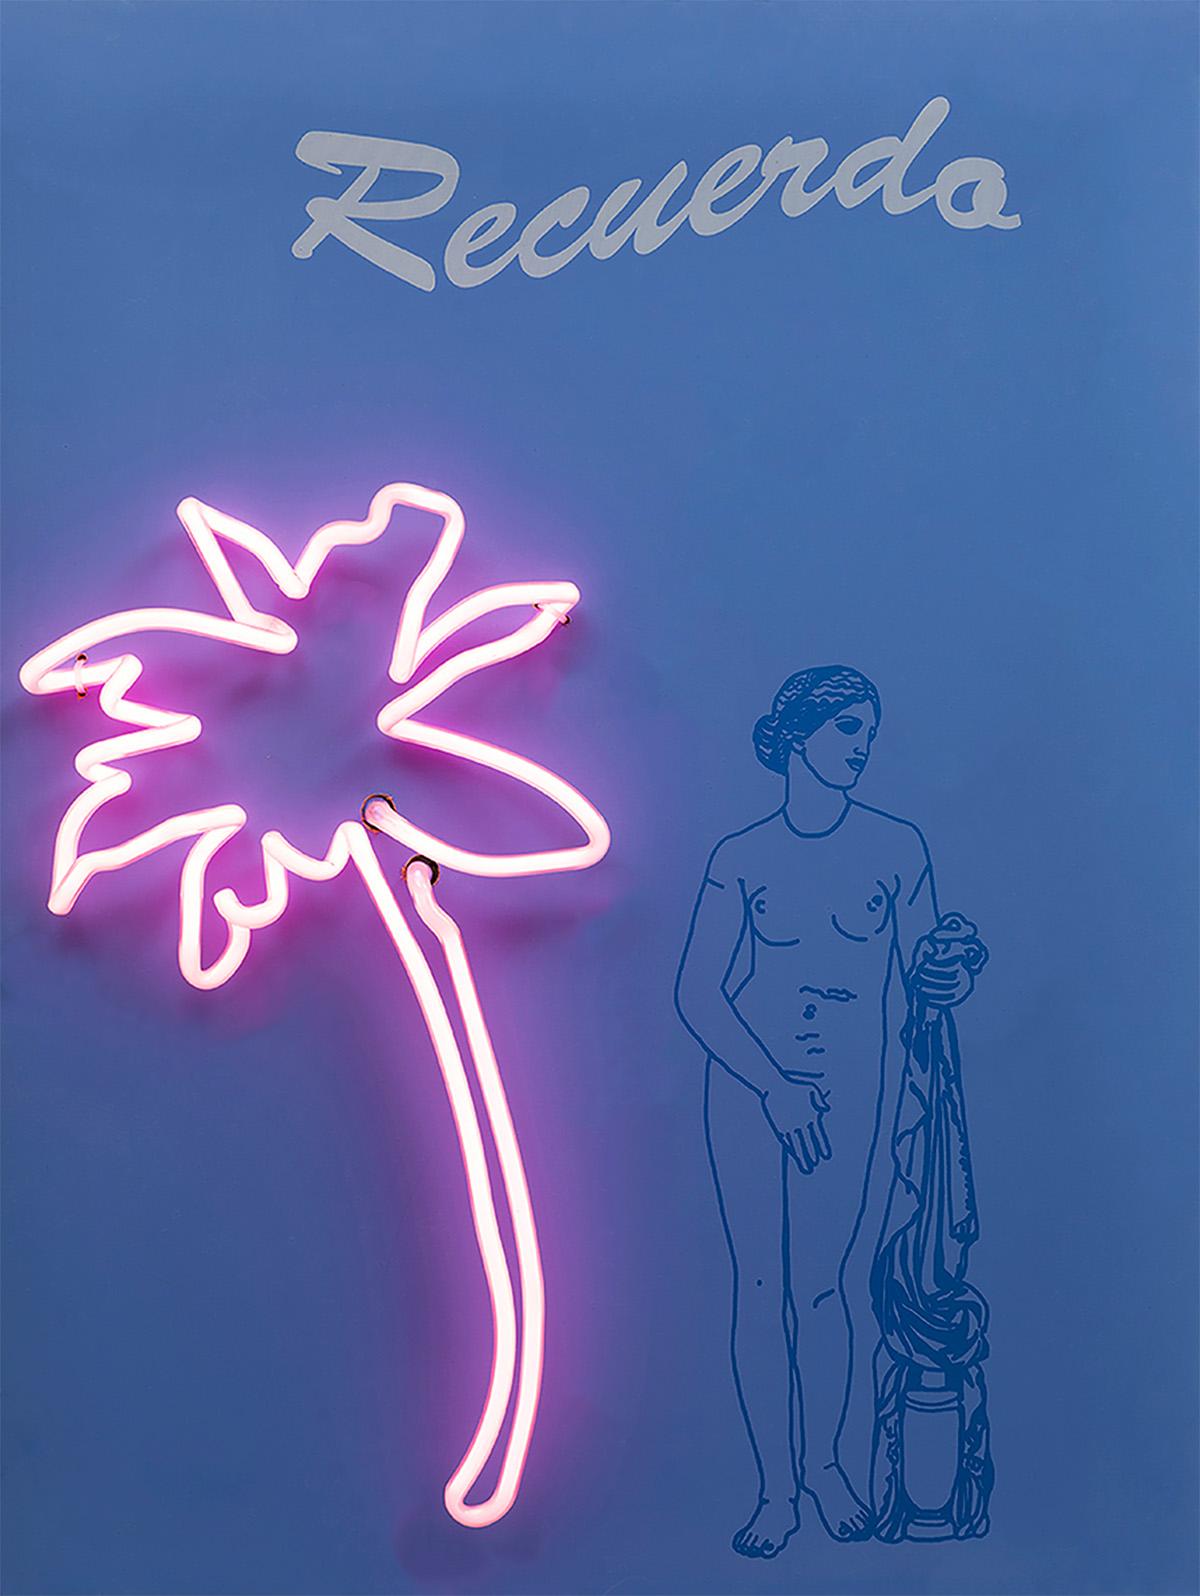 Ilusión und Recuerdo Aphrodite Diptychon, 2019  Paloma Castello 
Aus der Serie Neon Classics
Siebdruck mit Neonröhren
Gesamtgröße: 24 H in x 36,2 B x 5,9 T in. 
Individuelle Größe: 24 H in x 18,1 B x 5,9 T in. 
Auflage 6/10

In ihrer Arbeit erweckt